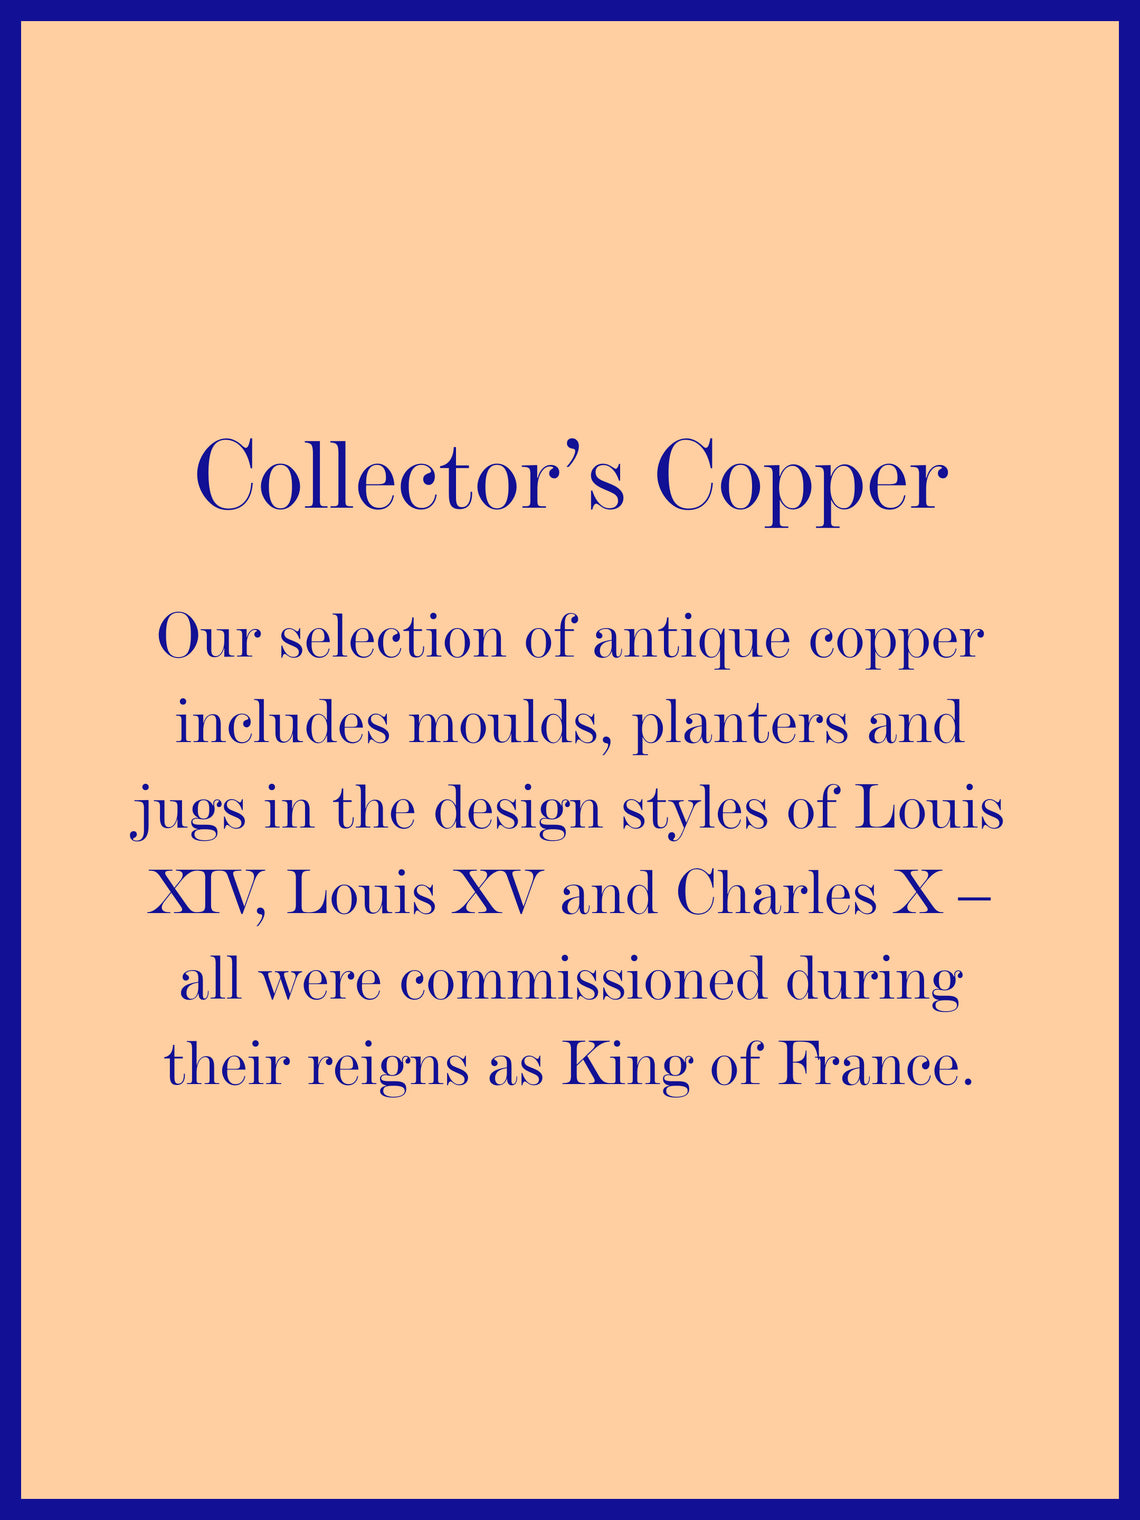 19th-Century Copper Decorative Mould